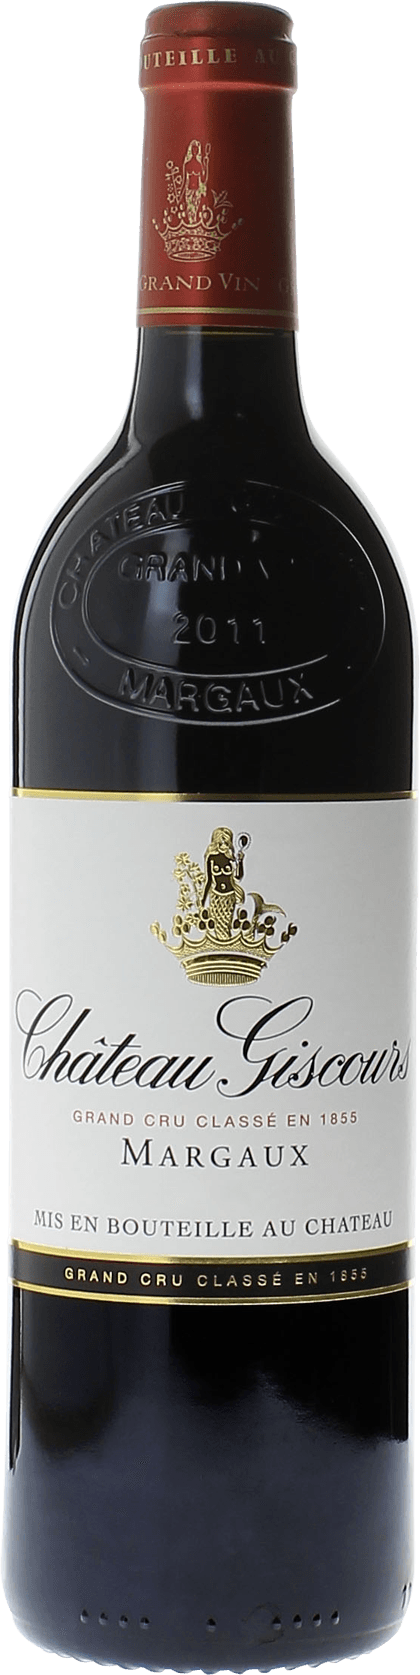 Giscours 1971 3me Grand cru class Margaux, Bordeaux rouge